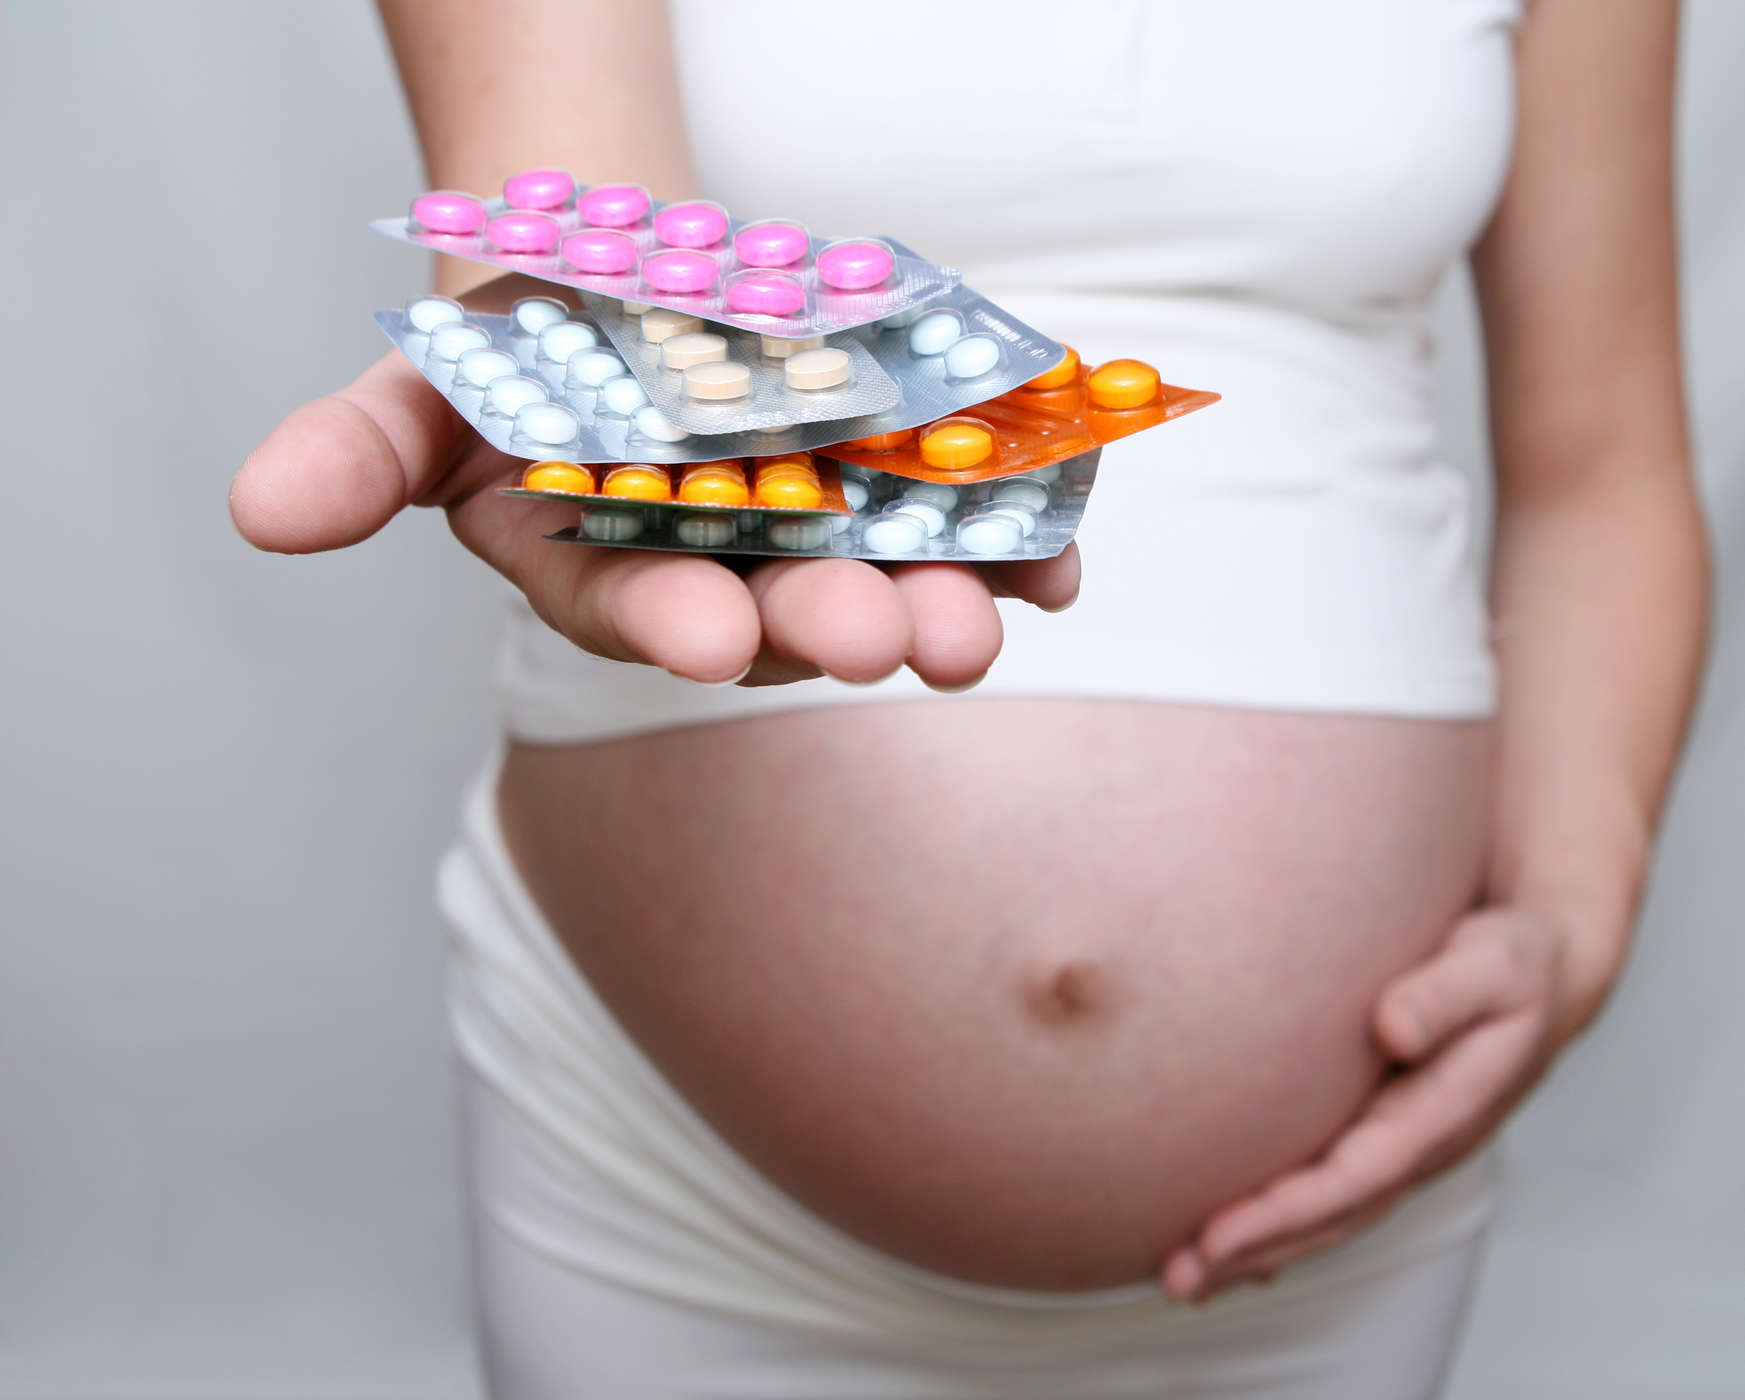 임신 중에 라니티딘을 복용하는 것이 안전한가요?